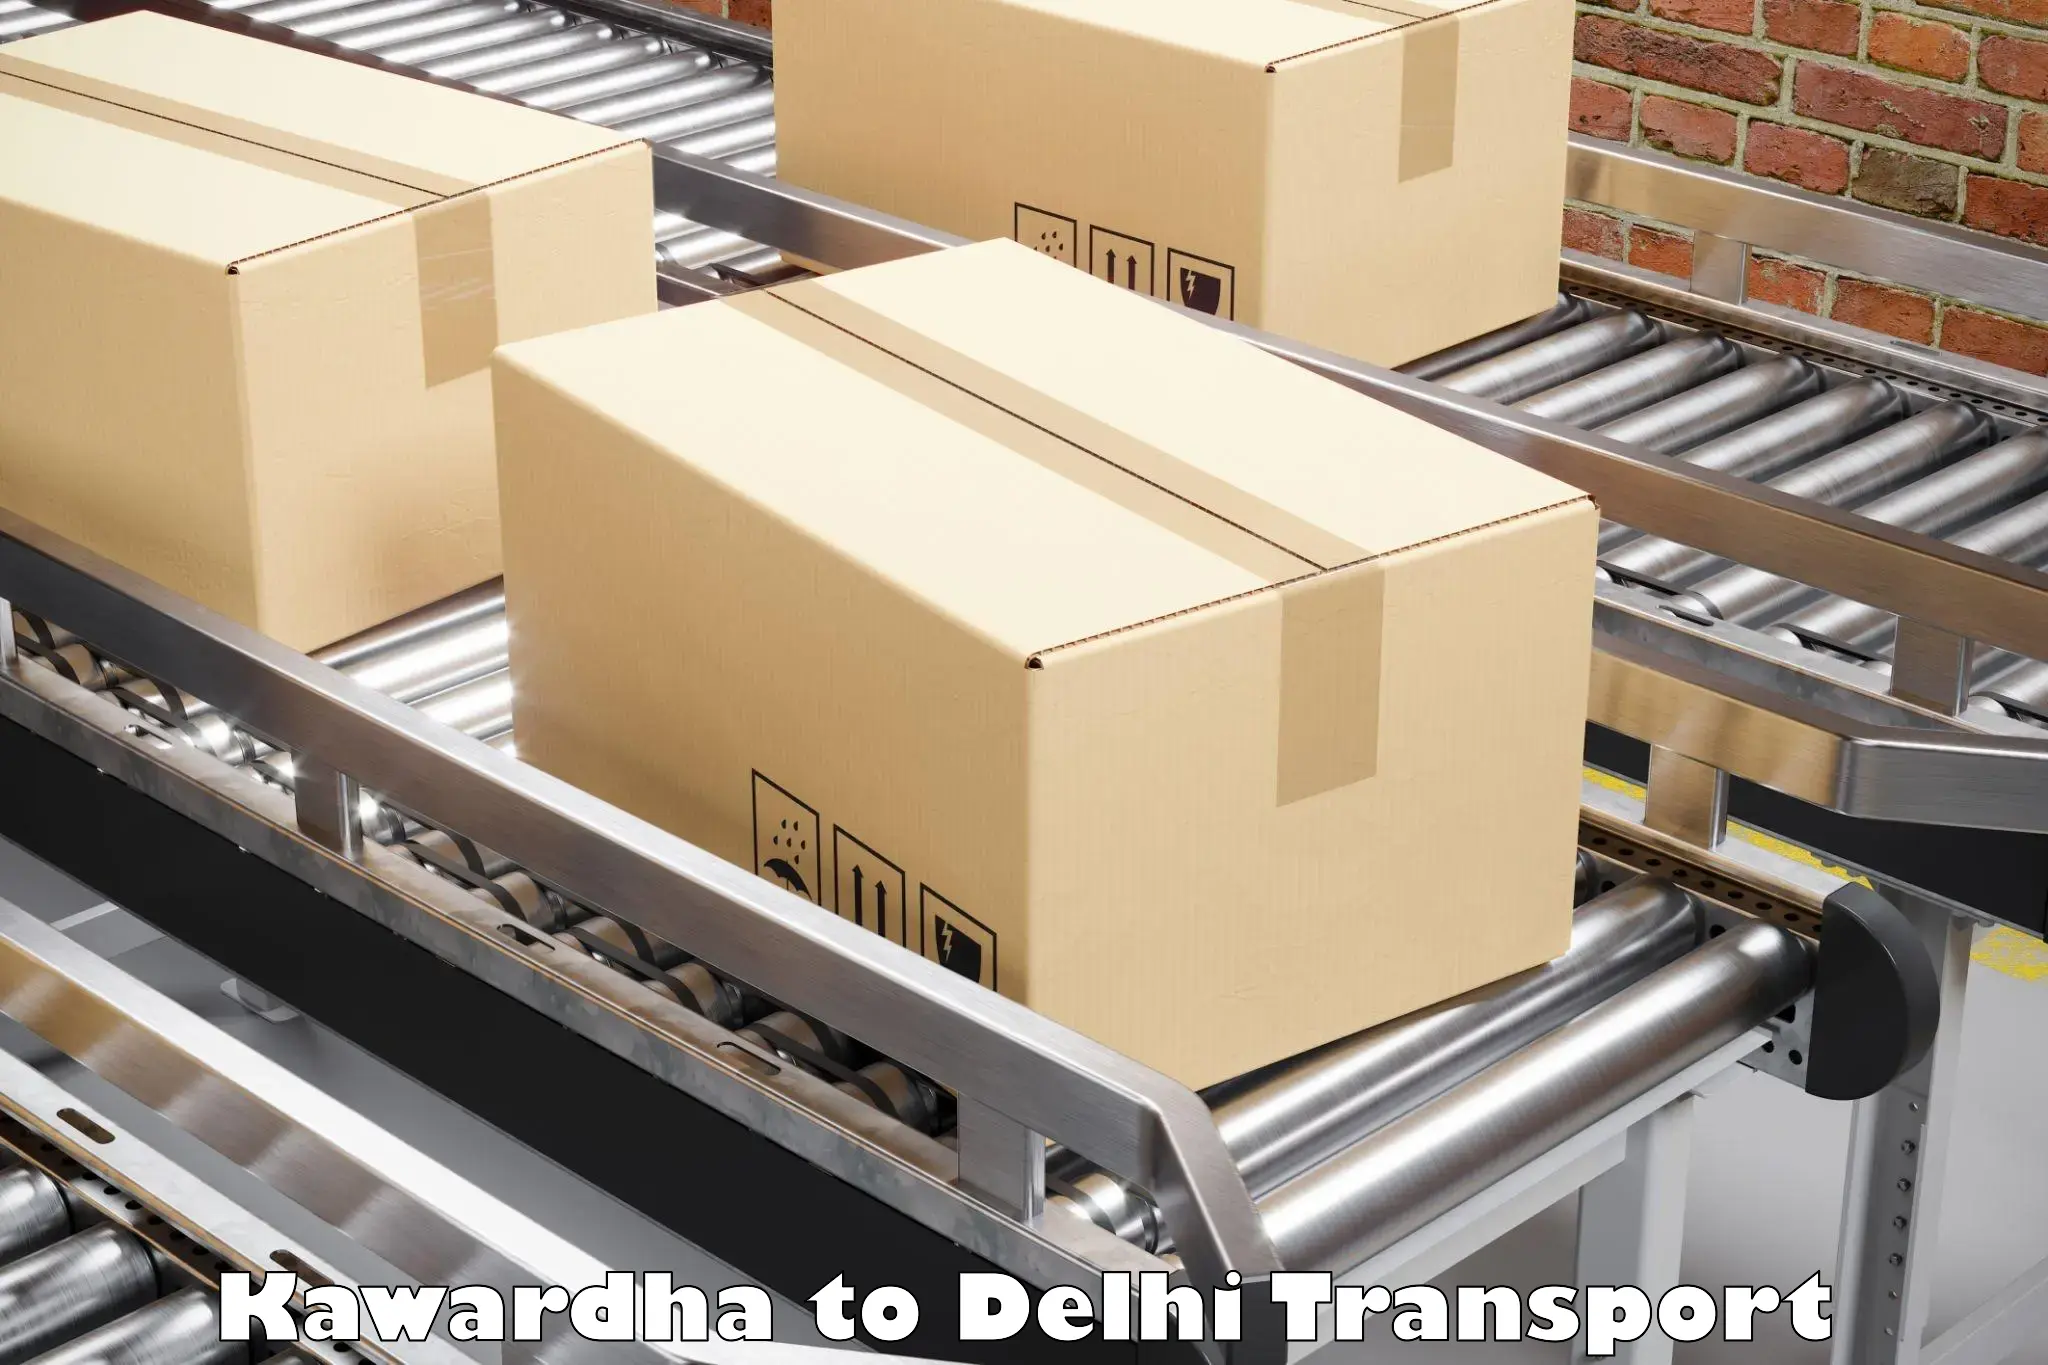 Delivery service Kawardha to IIT Delhi